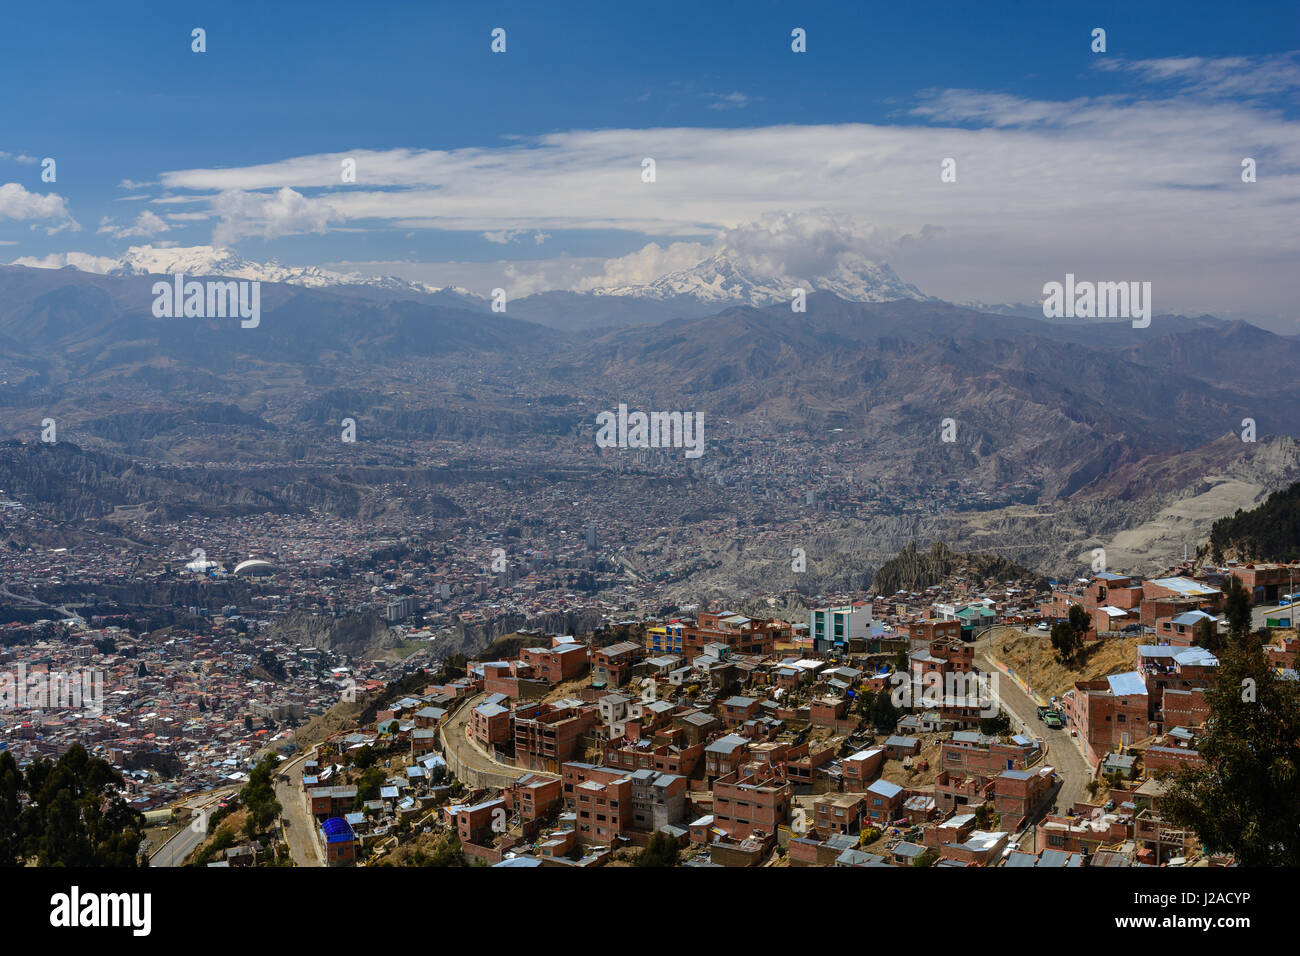 La BOLIVIE, La Paz, El Alto, le 'pauvre', ville située à une altitude de 4100 m sur l'Altiplano au-dessus de la chaudière de La Paz Banque D'Images